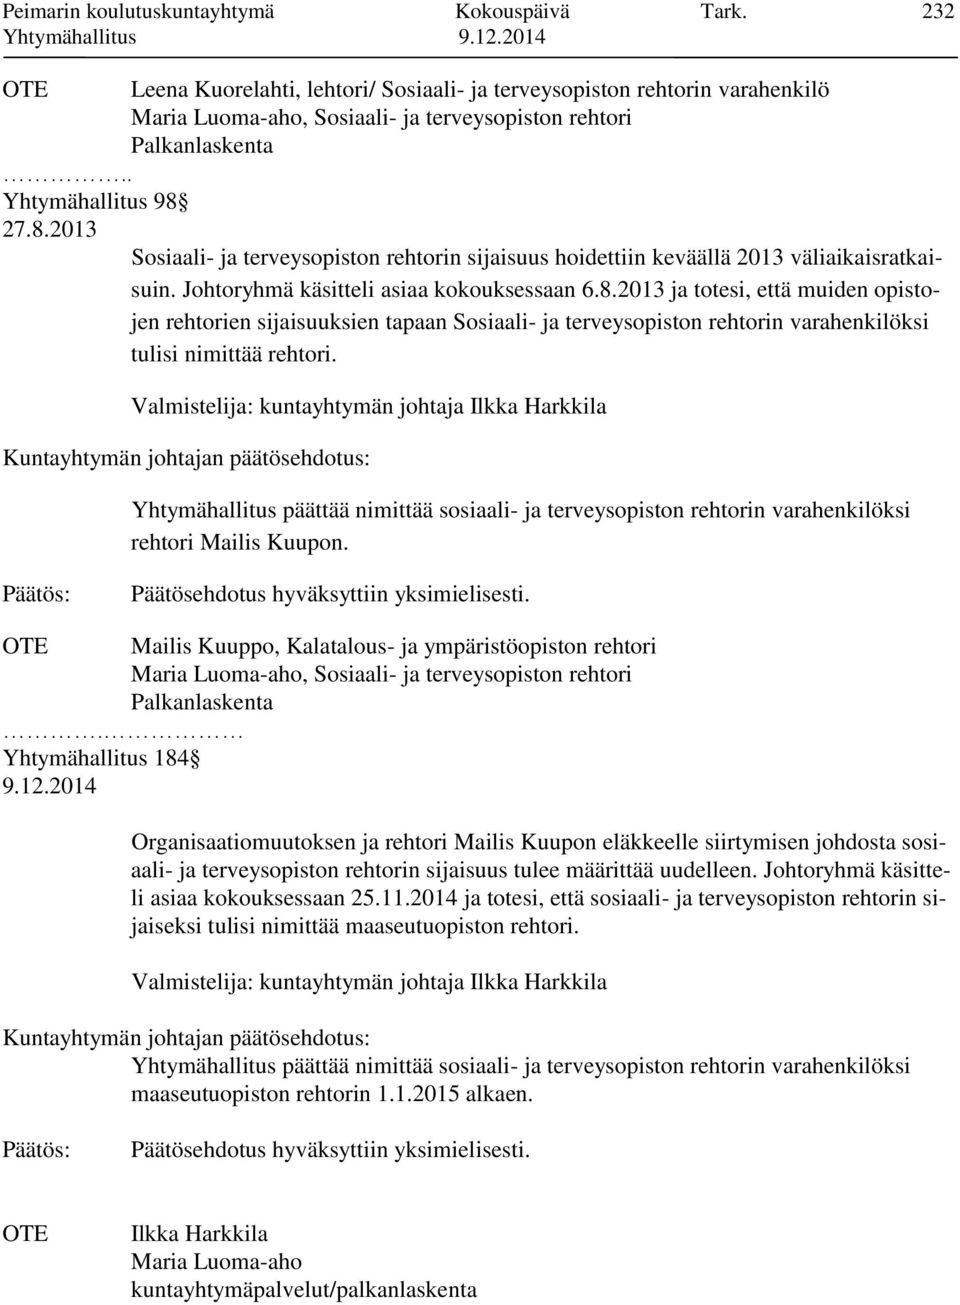 Valmistelija: kuntayhtymän johtaja Ilkka Harkkila Yhtymähallitus päättää nimittää sosiaali- ja terveysopiston rehtorin varahenkilöksi rehtori Mailis Kuupon.